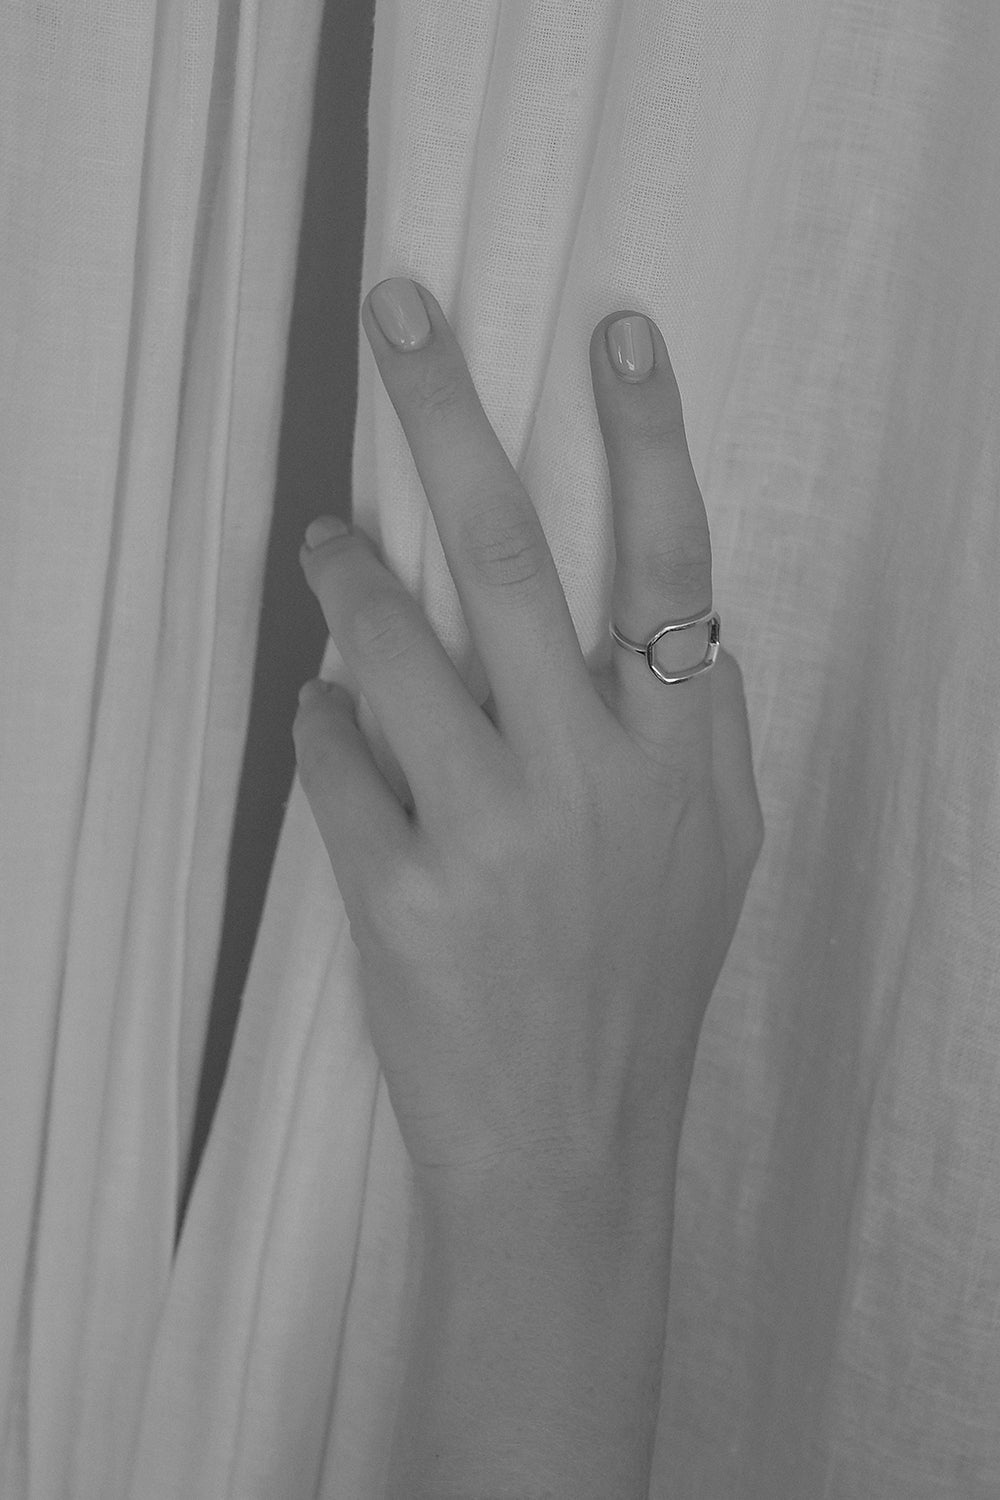 Odette Ring | Silver